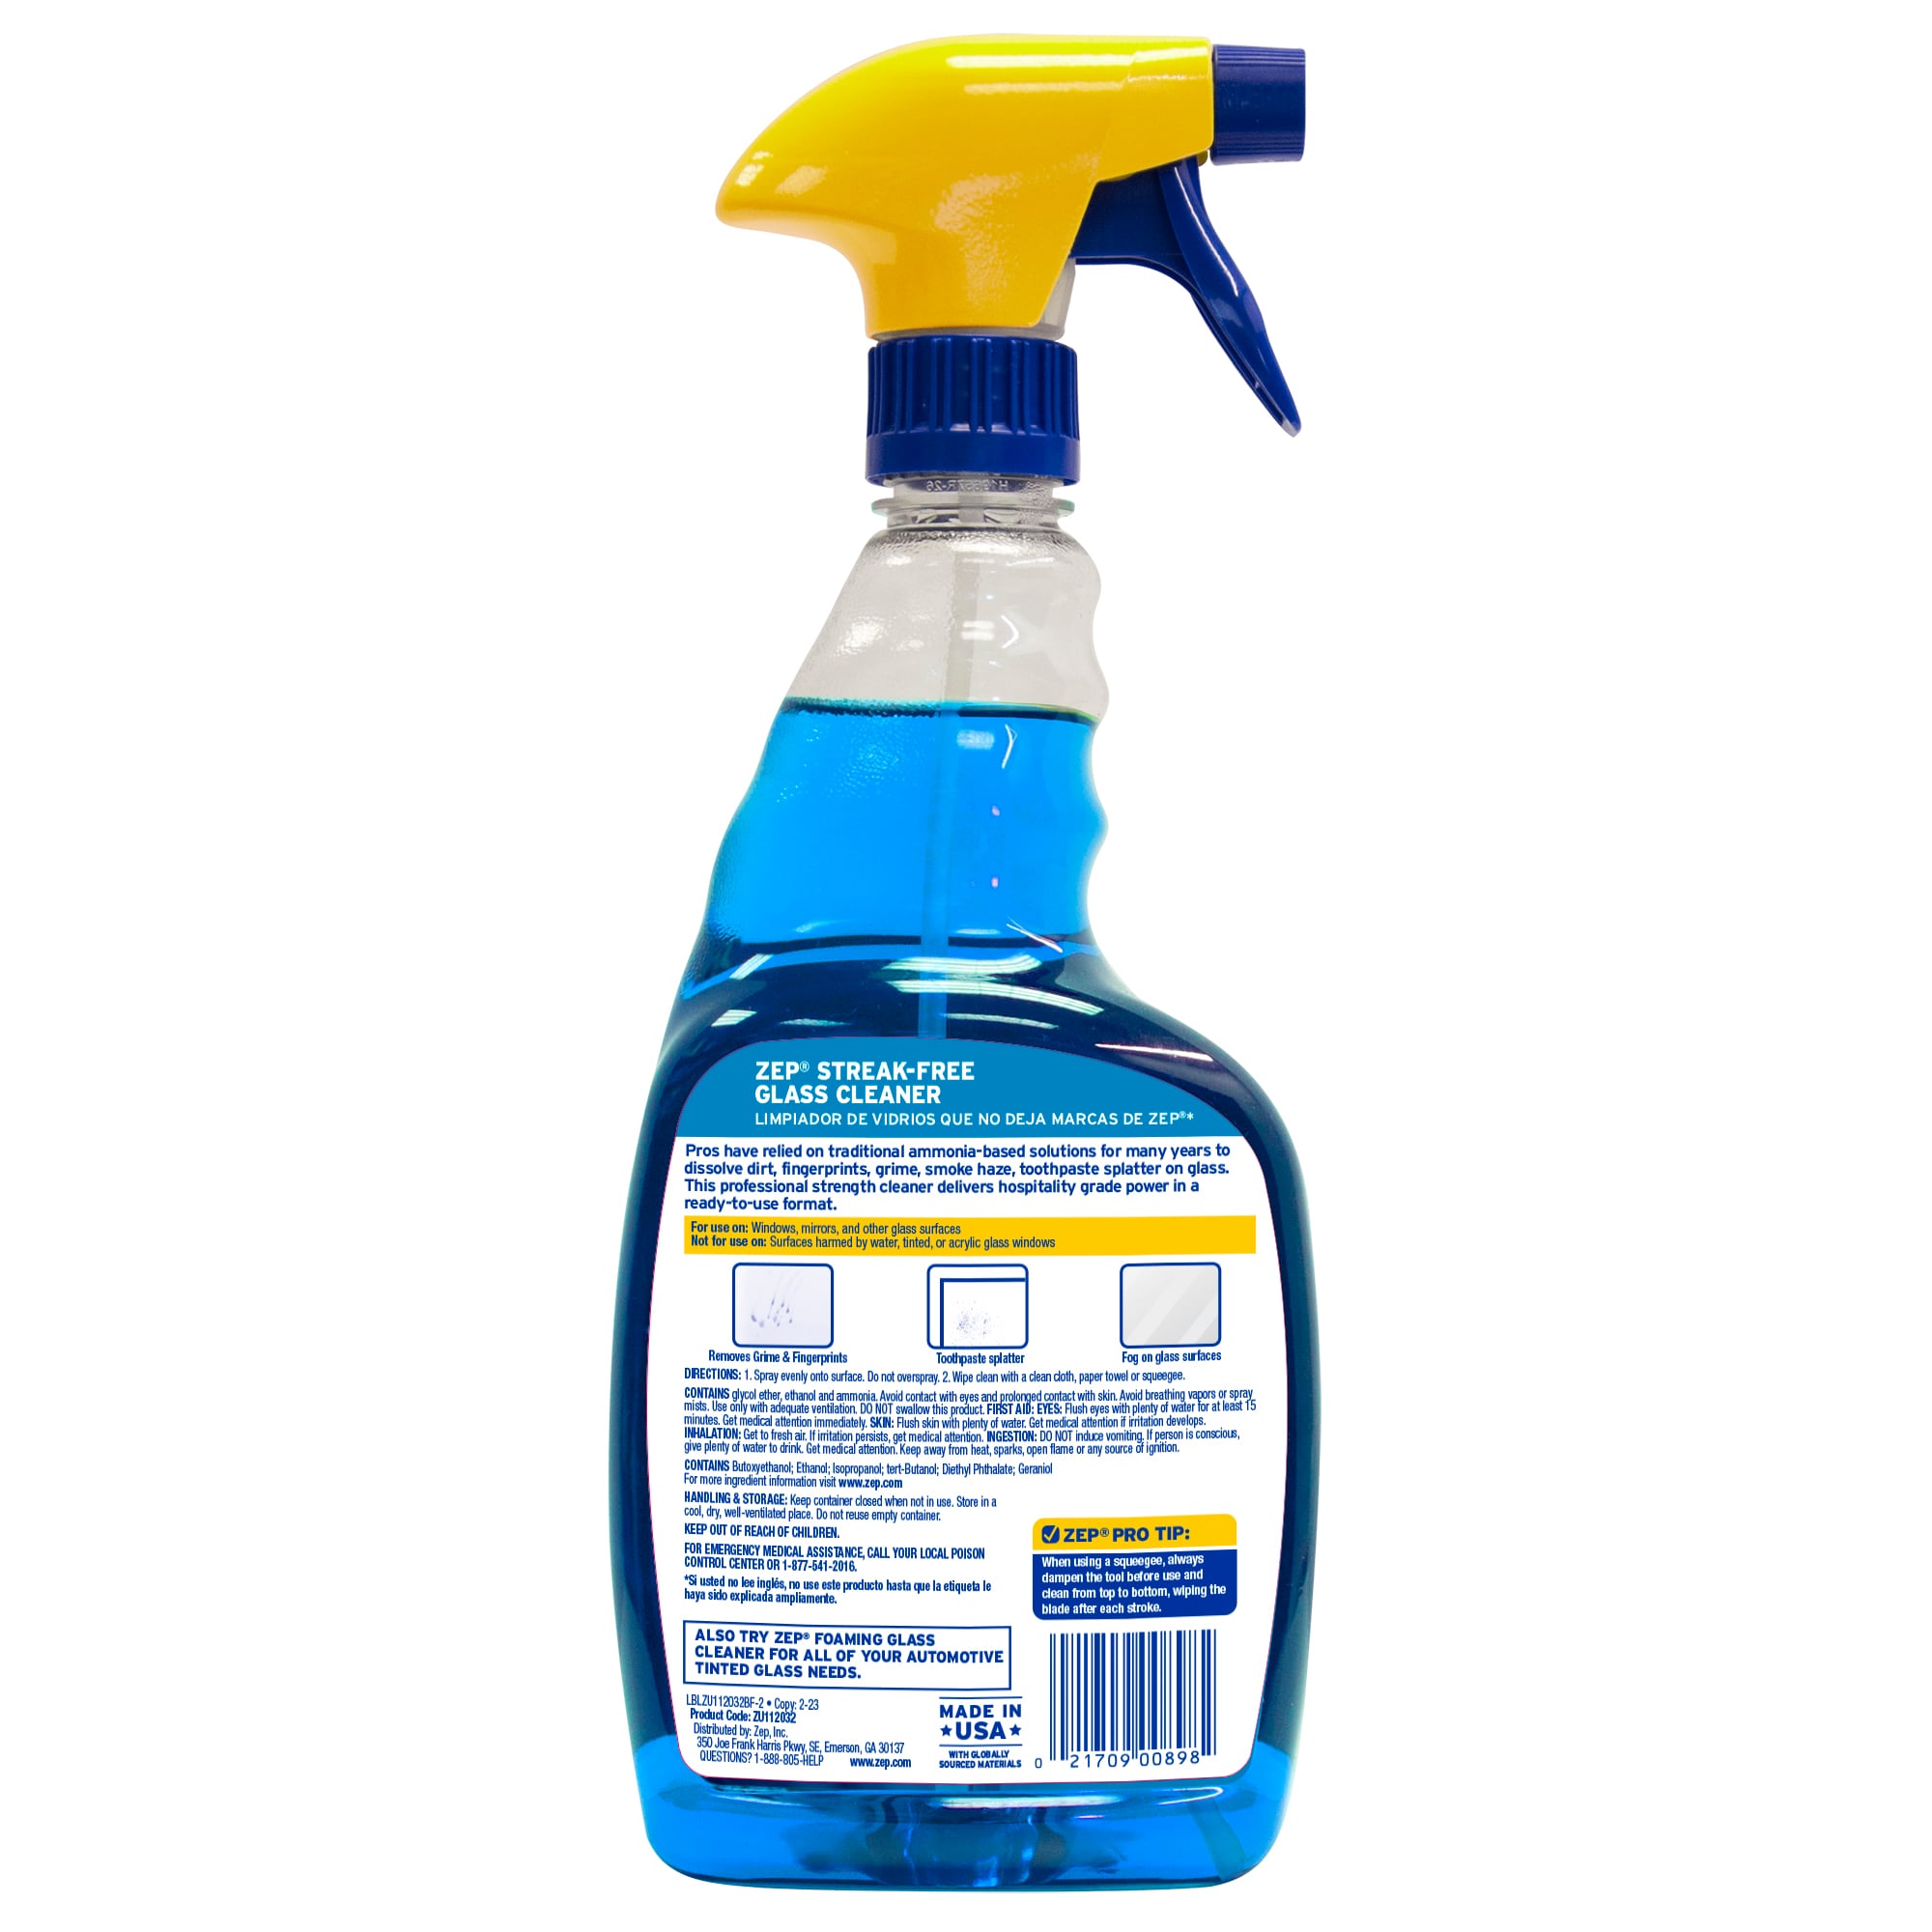 Windex Glass Cleaner Trigger Bottle Vinegar - 26 Fl Oz : Target